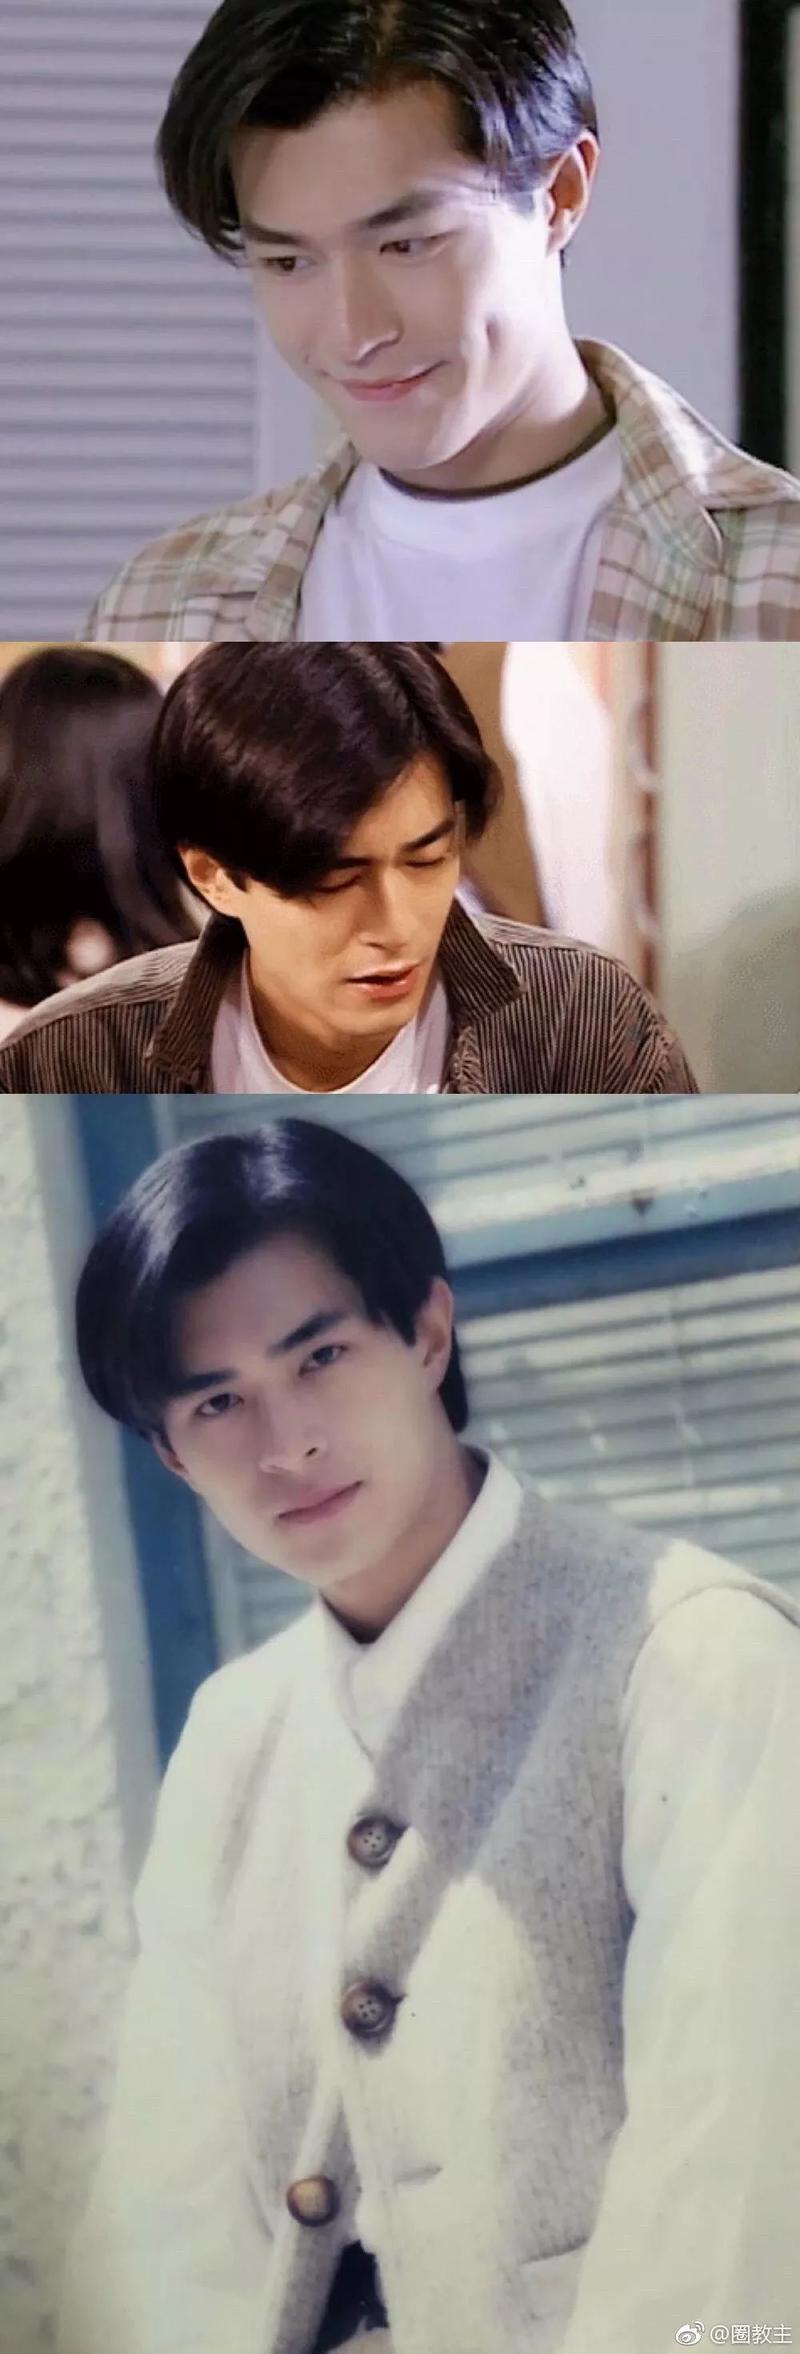 90年代男士发型图片 90年代男士发型图片短发